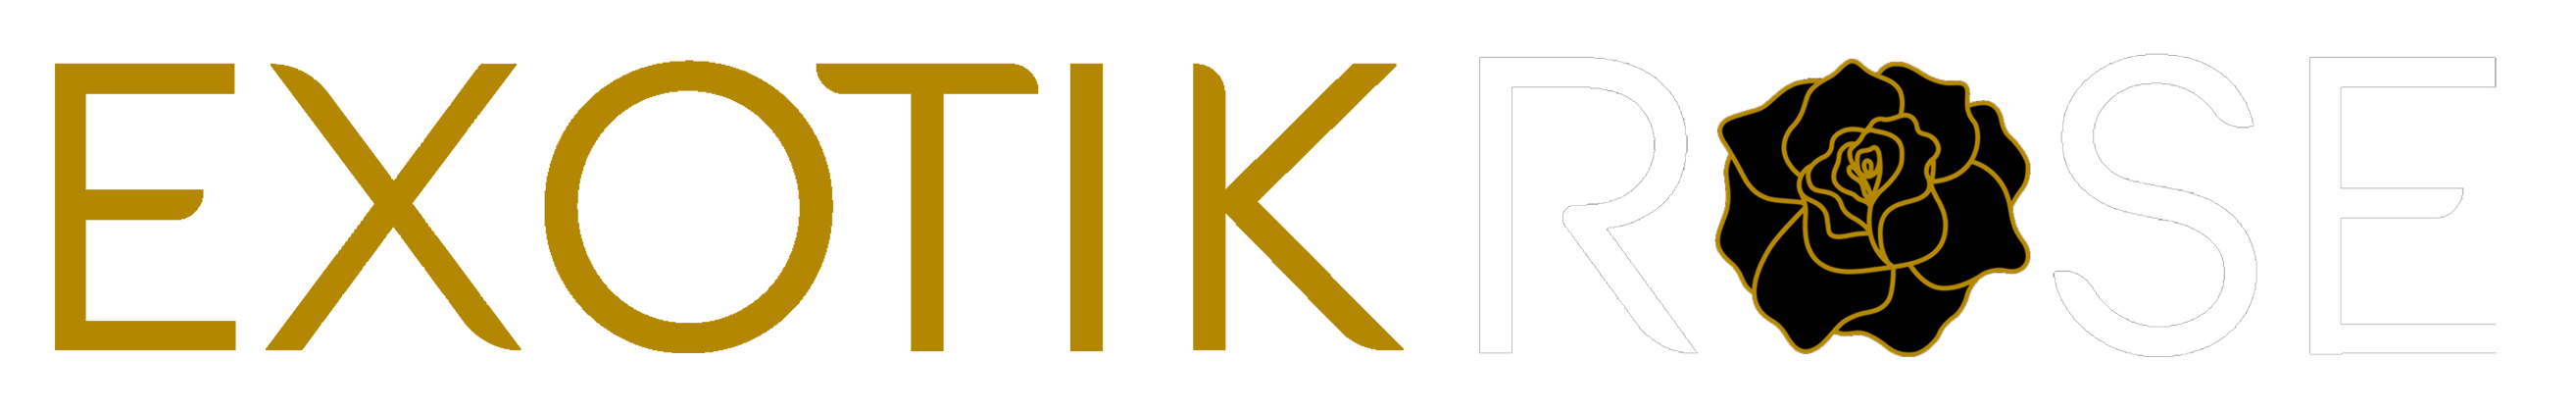 exotikrose-horizontal-logo-v2